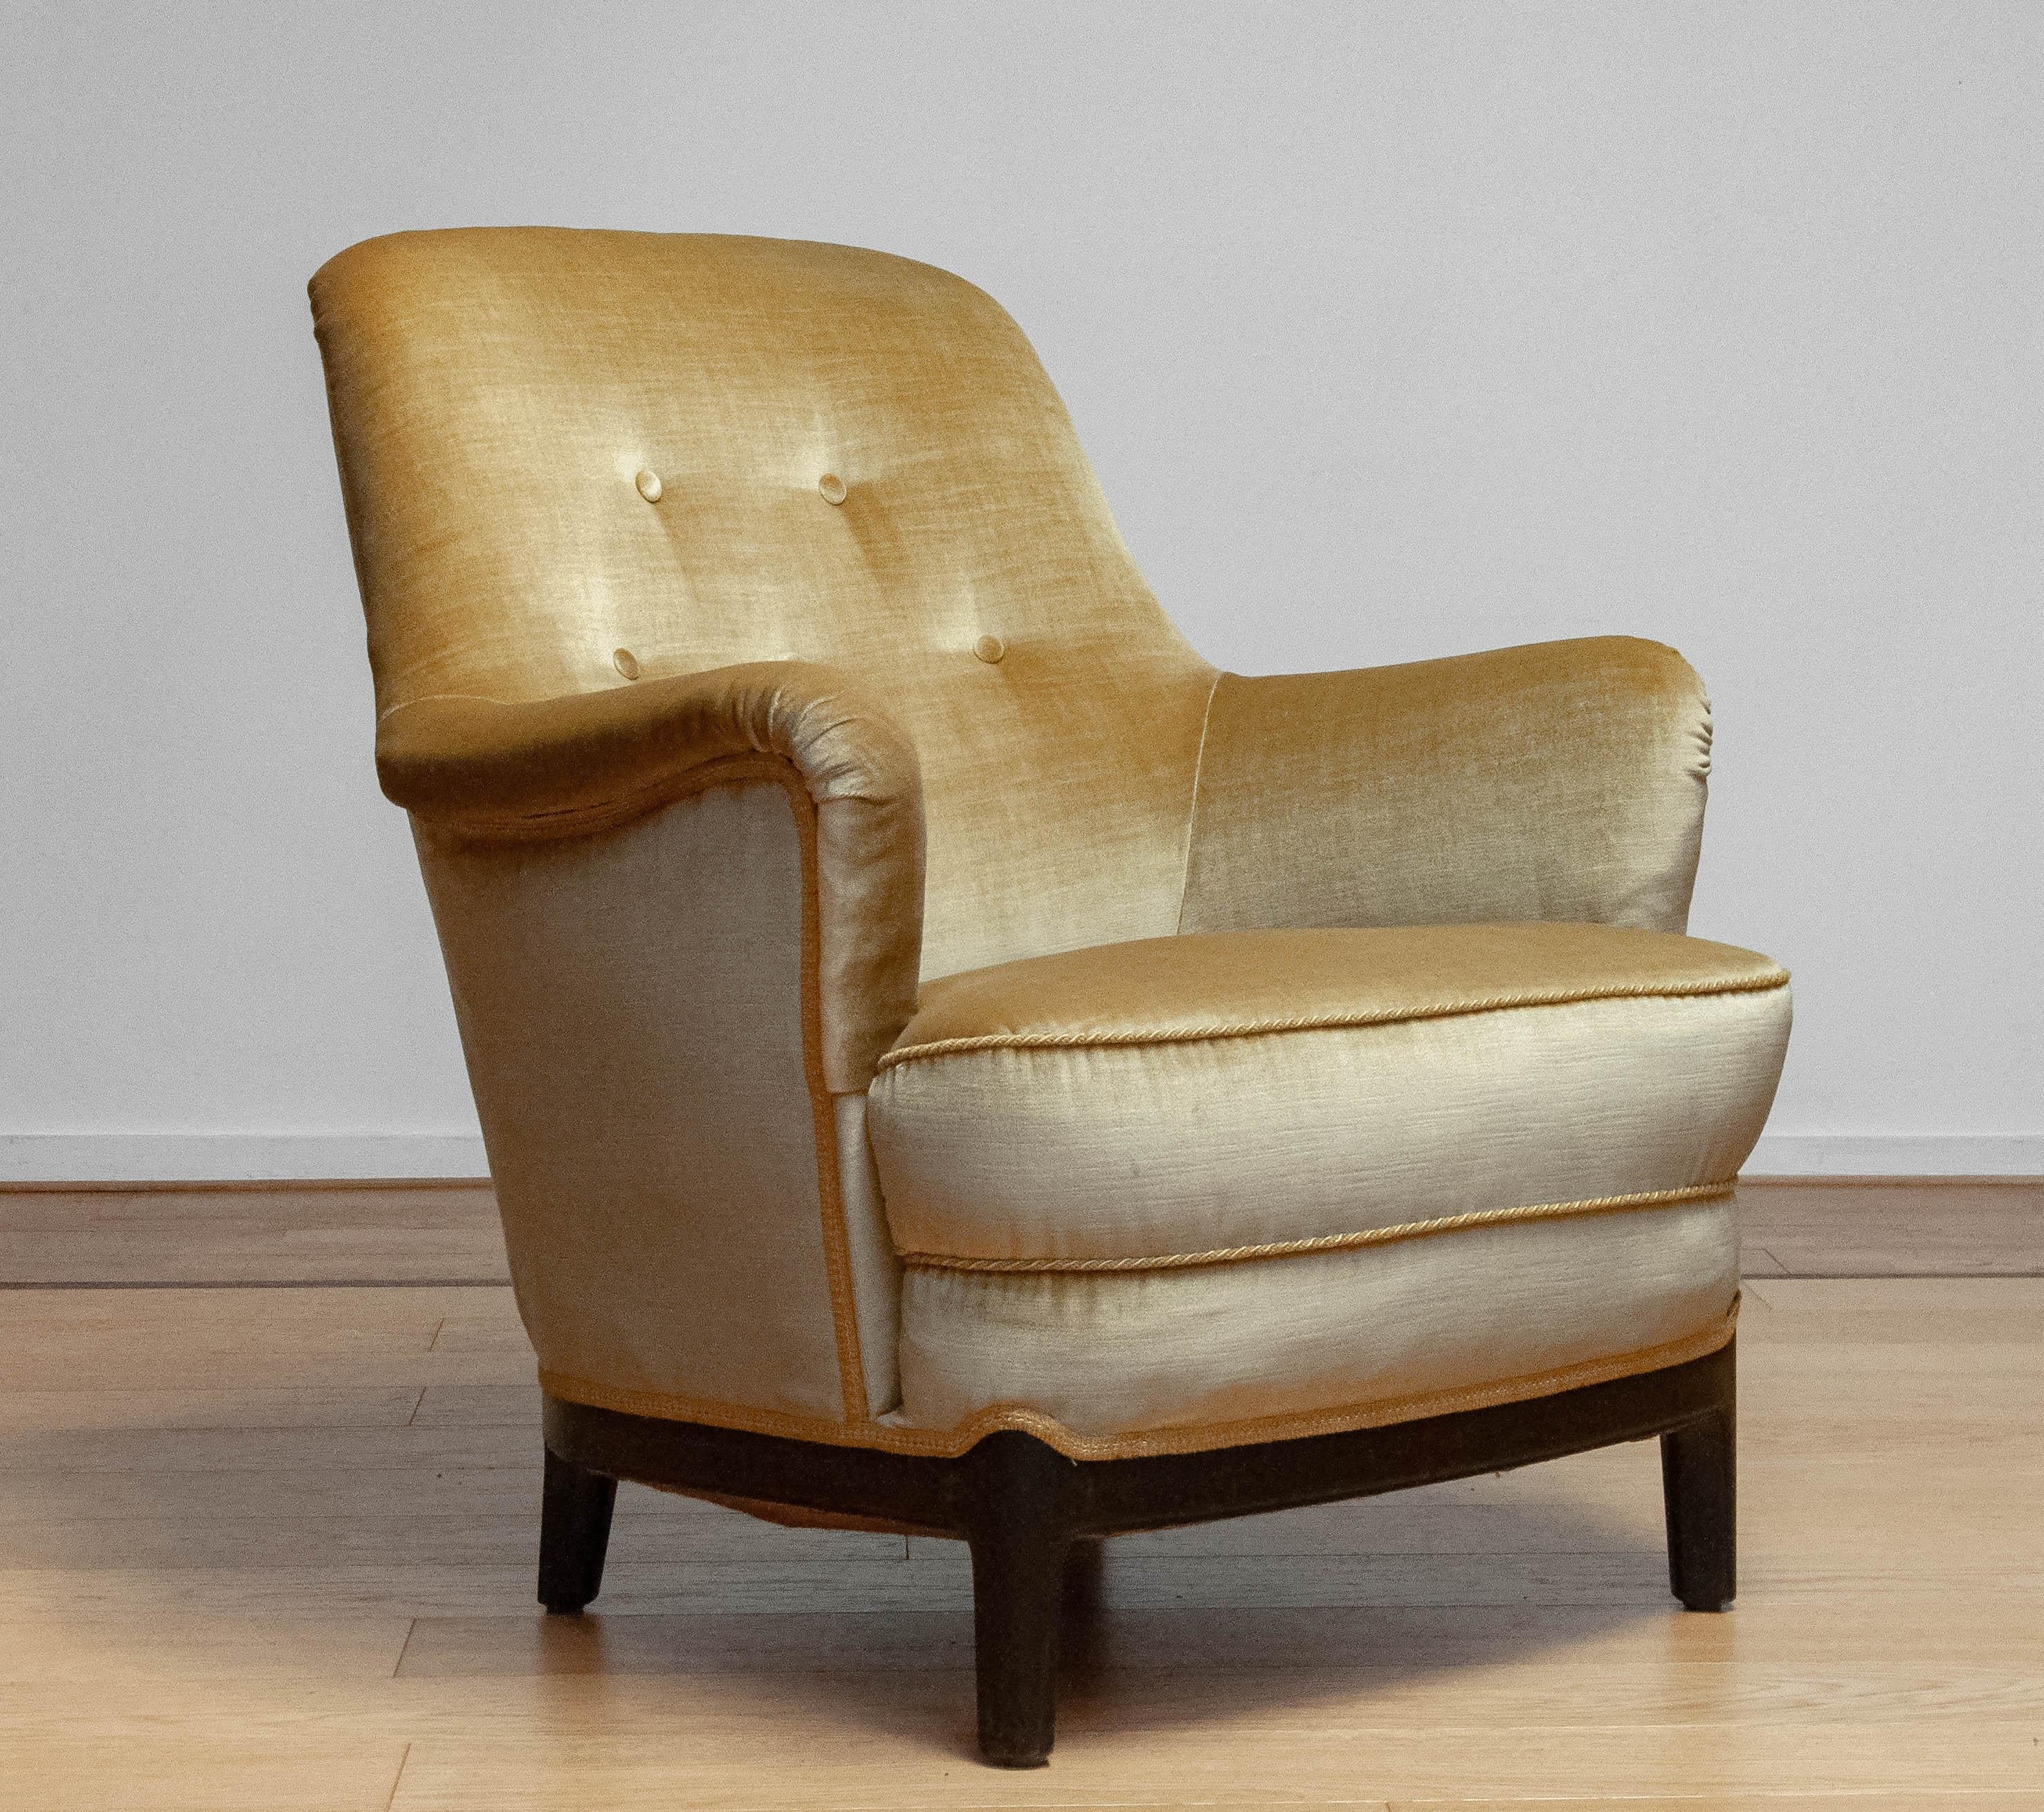 Sehr bequemer Loungesessel, entworfen von Carl Malmsten in den 1940er Jahren, neu gepolstert mit goldenem Samtstoff irgendwo in den 1960er Jahren.
Die Eichenbeine sind dunkel gebeizt, ebenfalls aus einer späteren Zeit. Vermutlich im selben Moment,